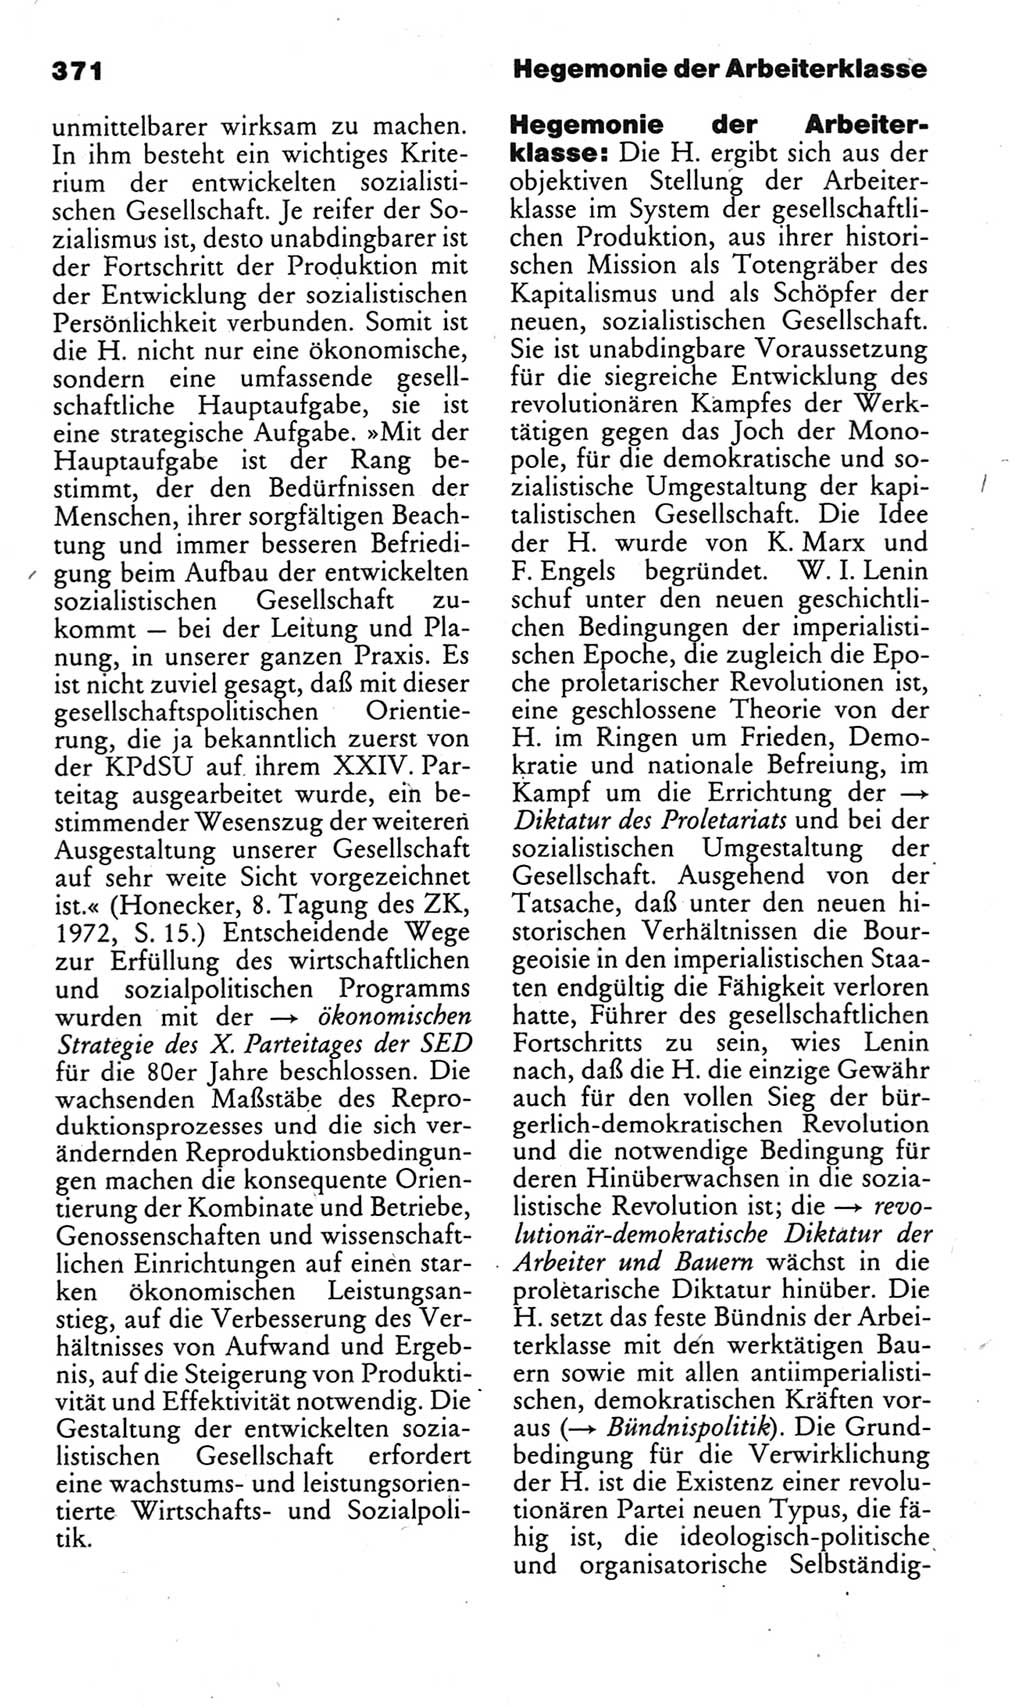 Kleines politisches Wörterbuch [Deutsche Demokratische Republik (DDR)] 1983, Seite 371 (Kl. pol. Wb. DDR 1983, S. 371)